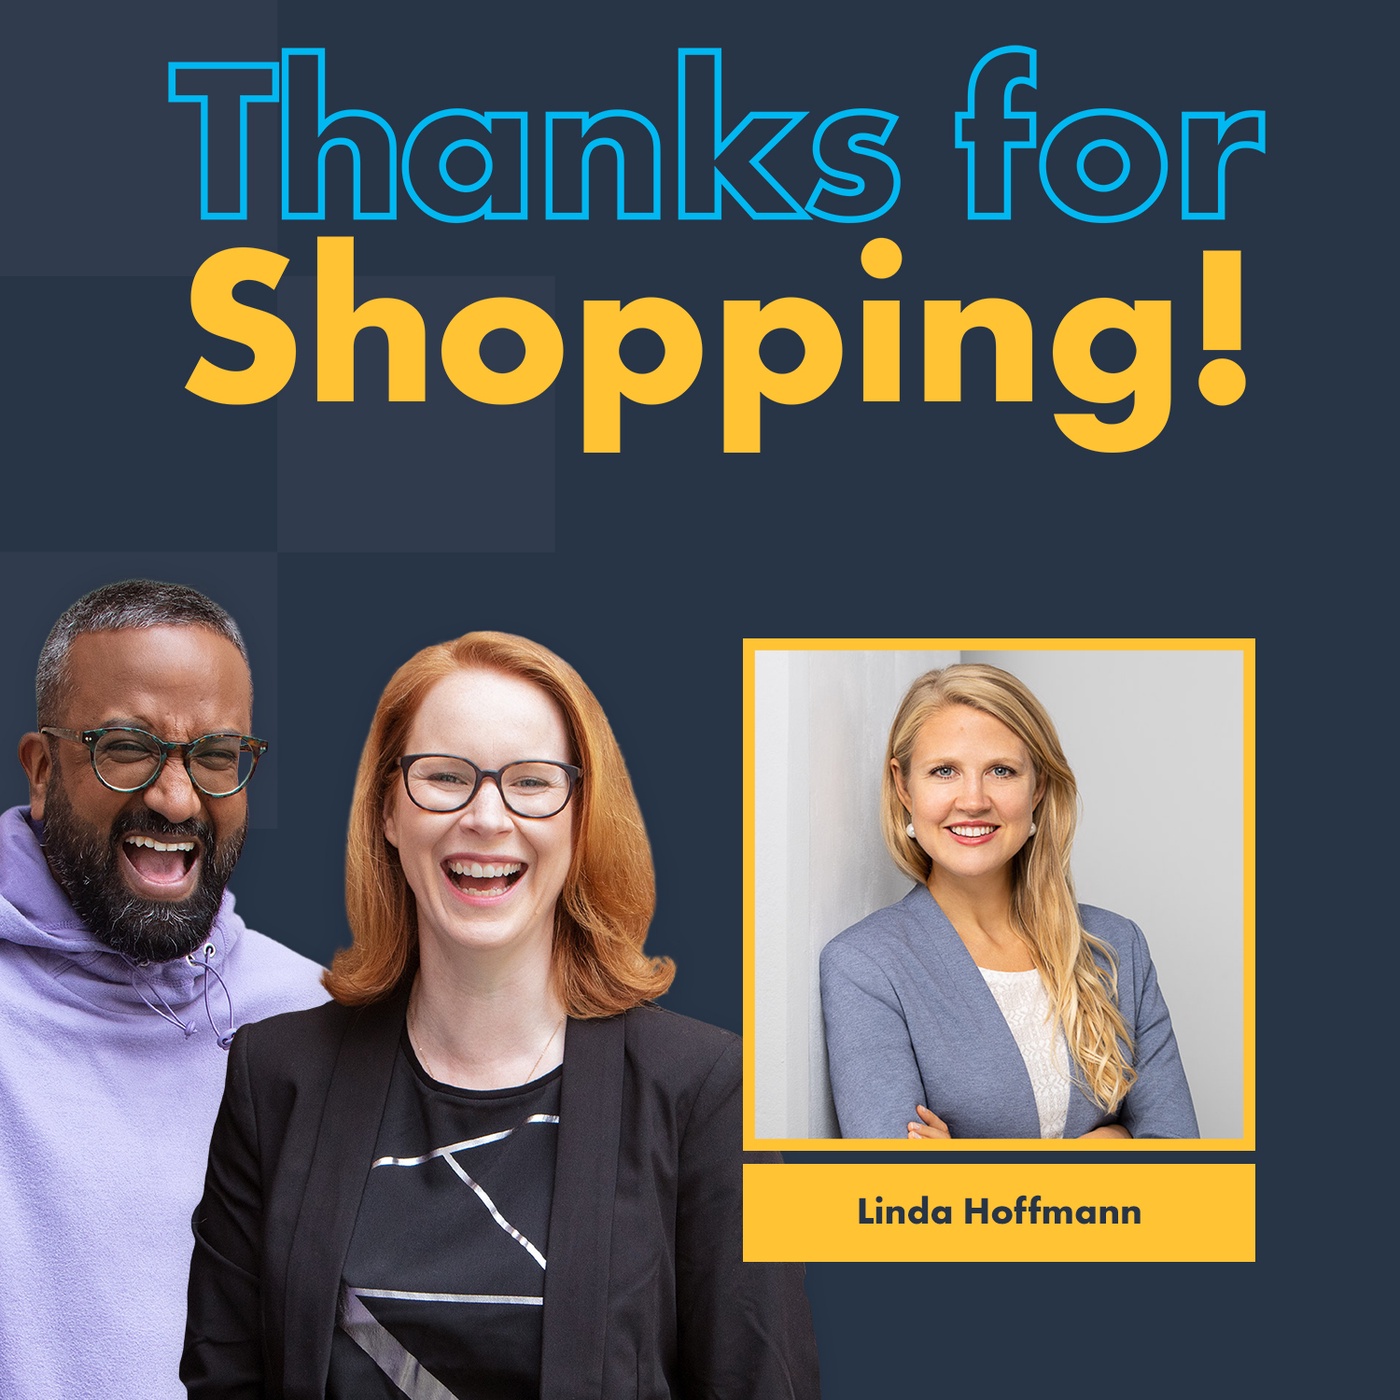 shopify ermöglicht erfolgreichen Onlinehandel - mit Linda Hofmann